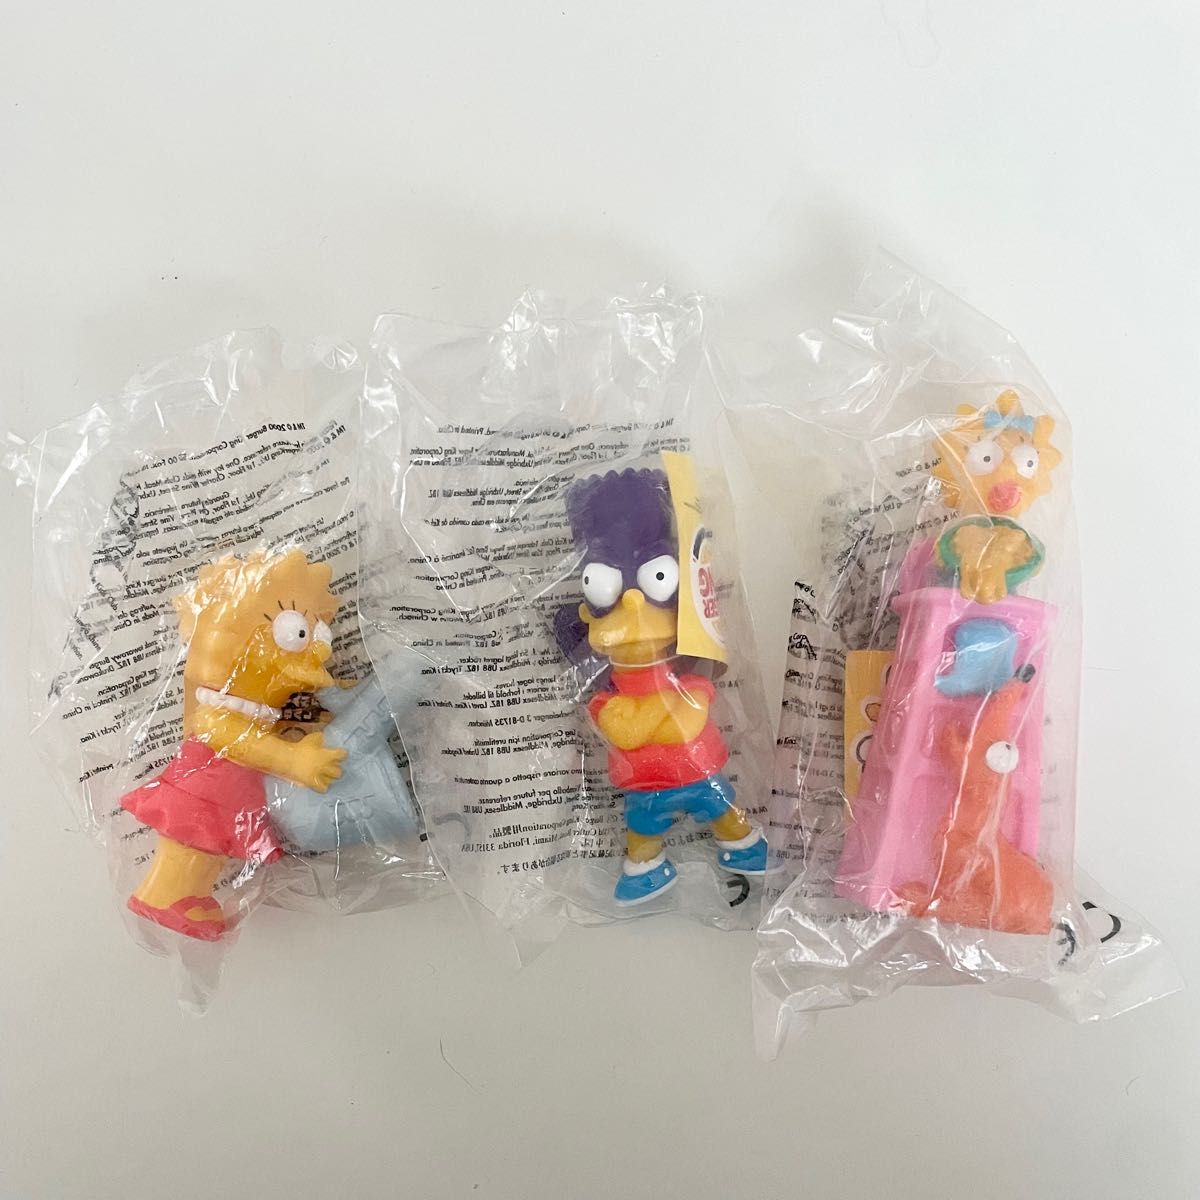 The Simpsons シンプソンズ フィギュア バーガーキングコラボ 海外